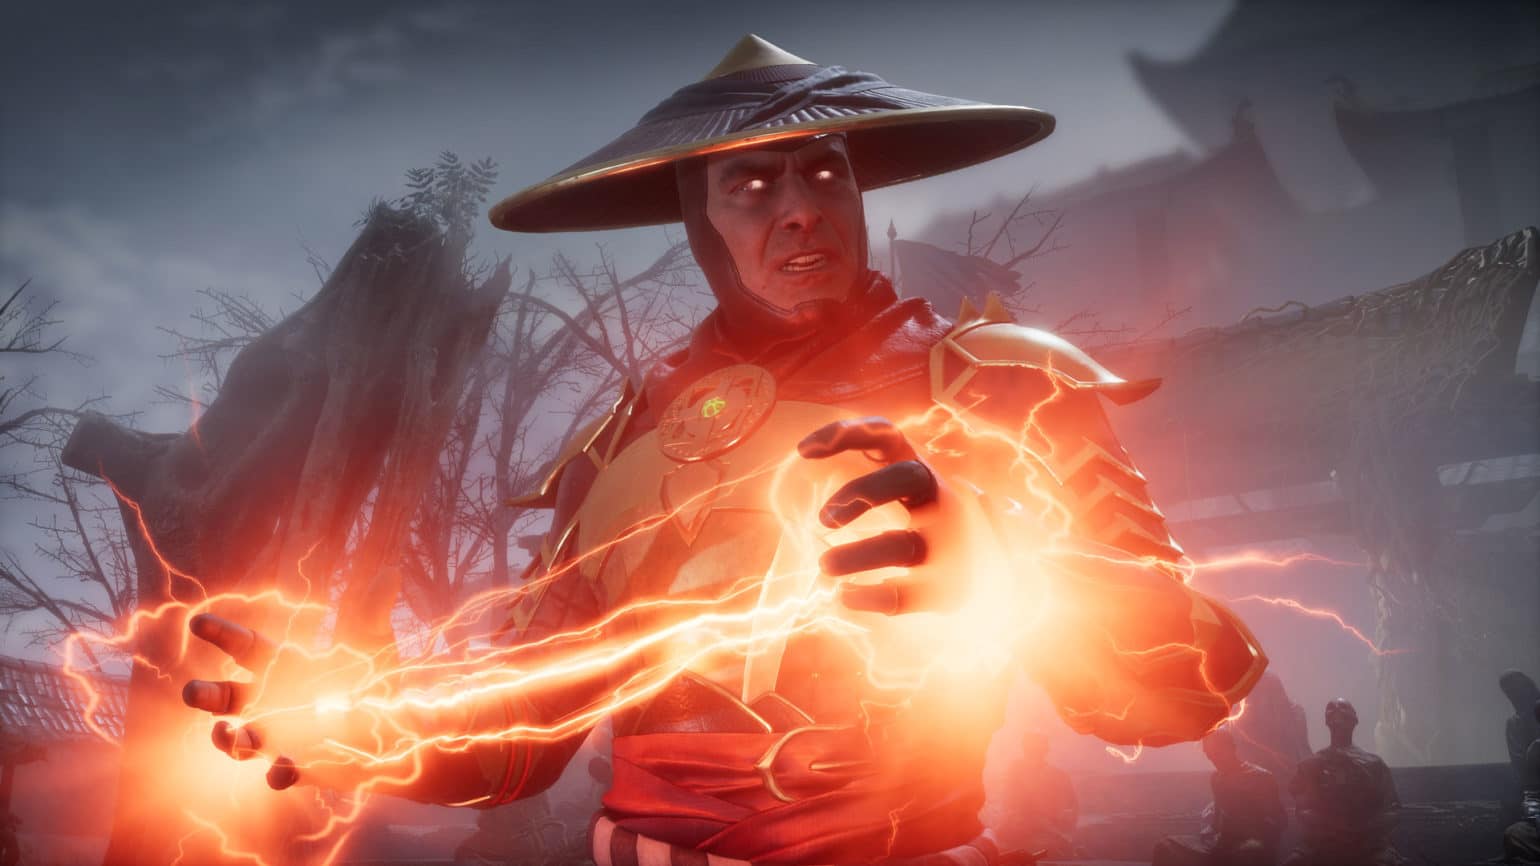 Mortal Kombat 11 sortie en ce mois d'avril 2019